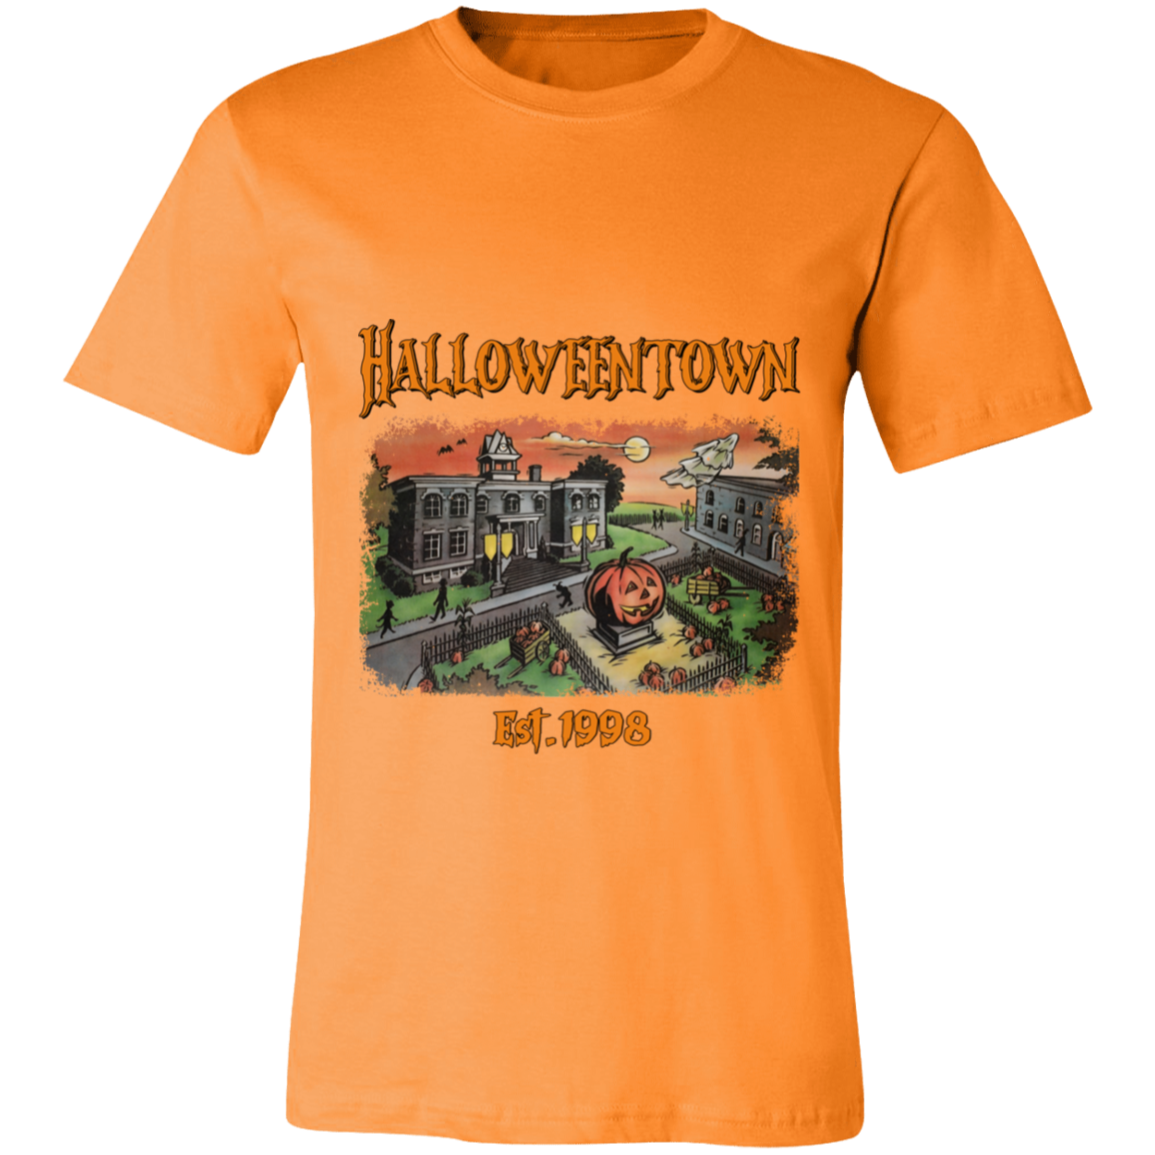 HALLOWEENTOWN EST 1998 Unisex Jersey Short-Sleeve T-Shirt